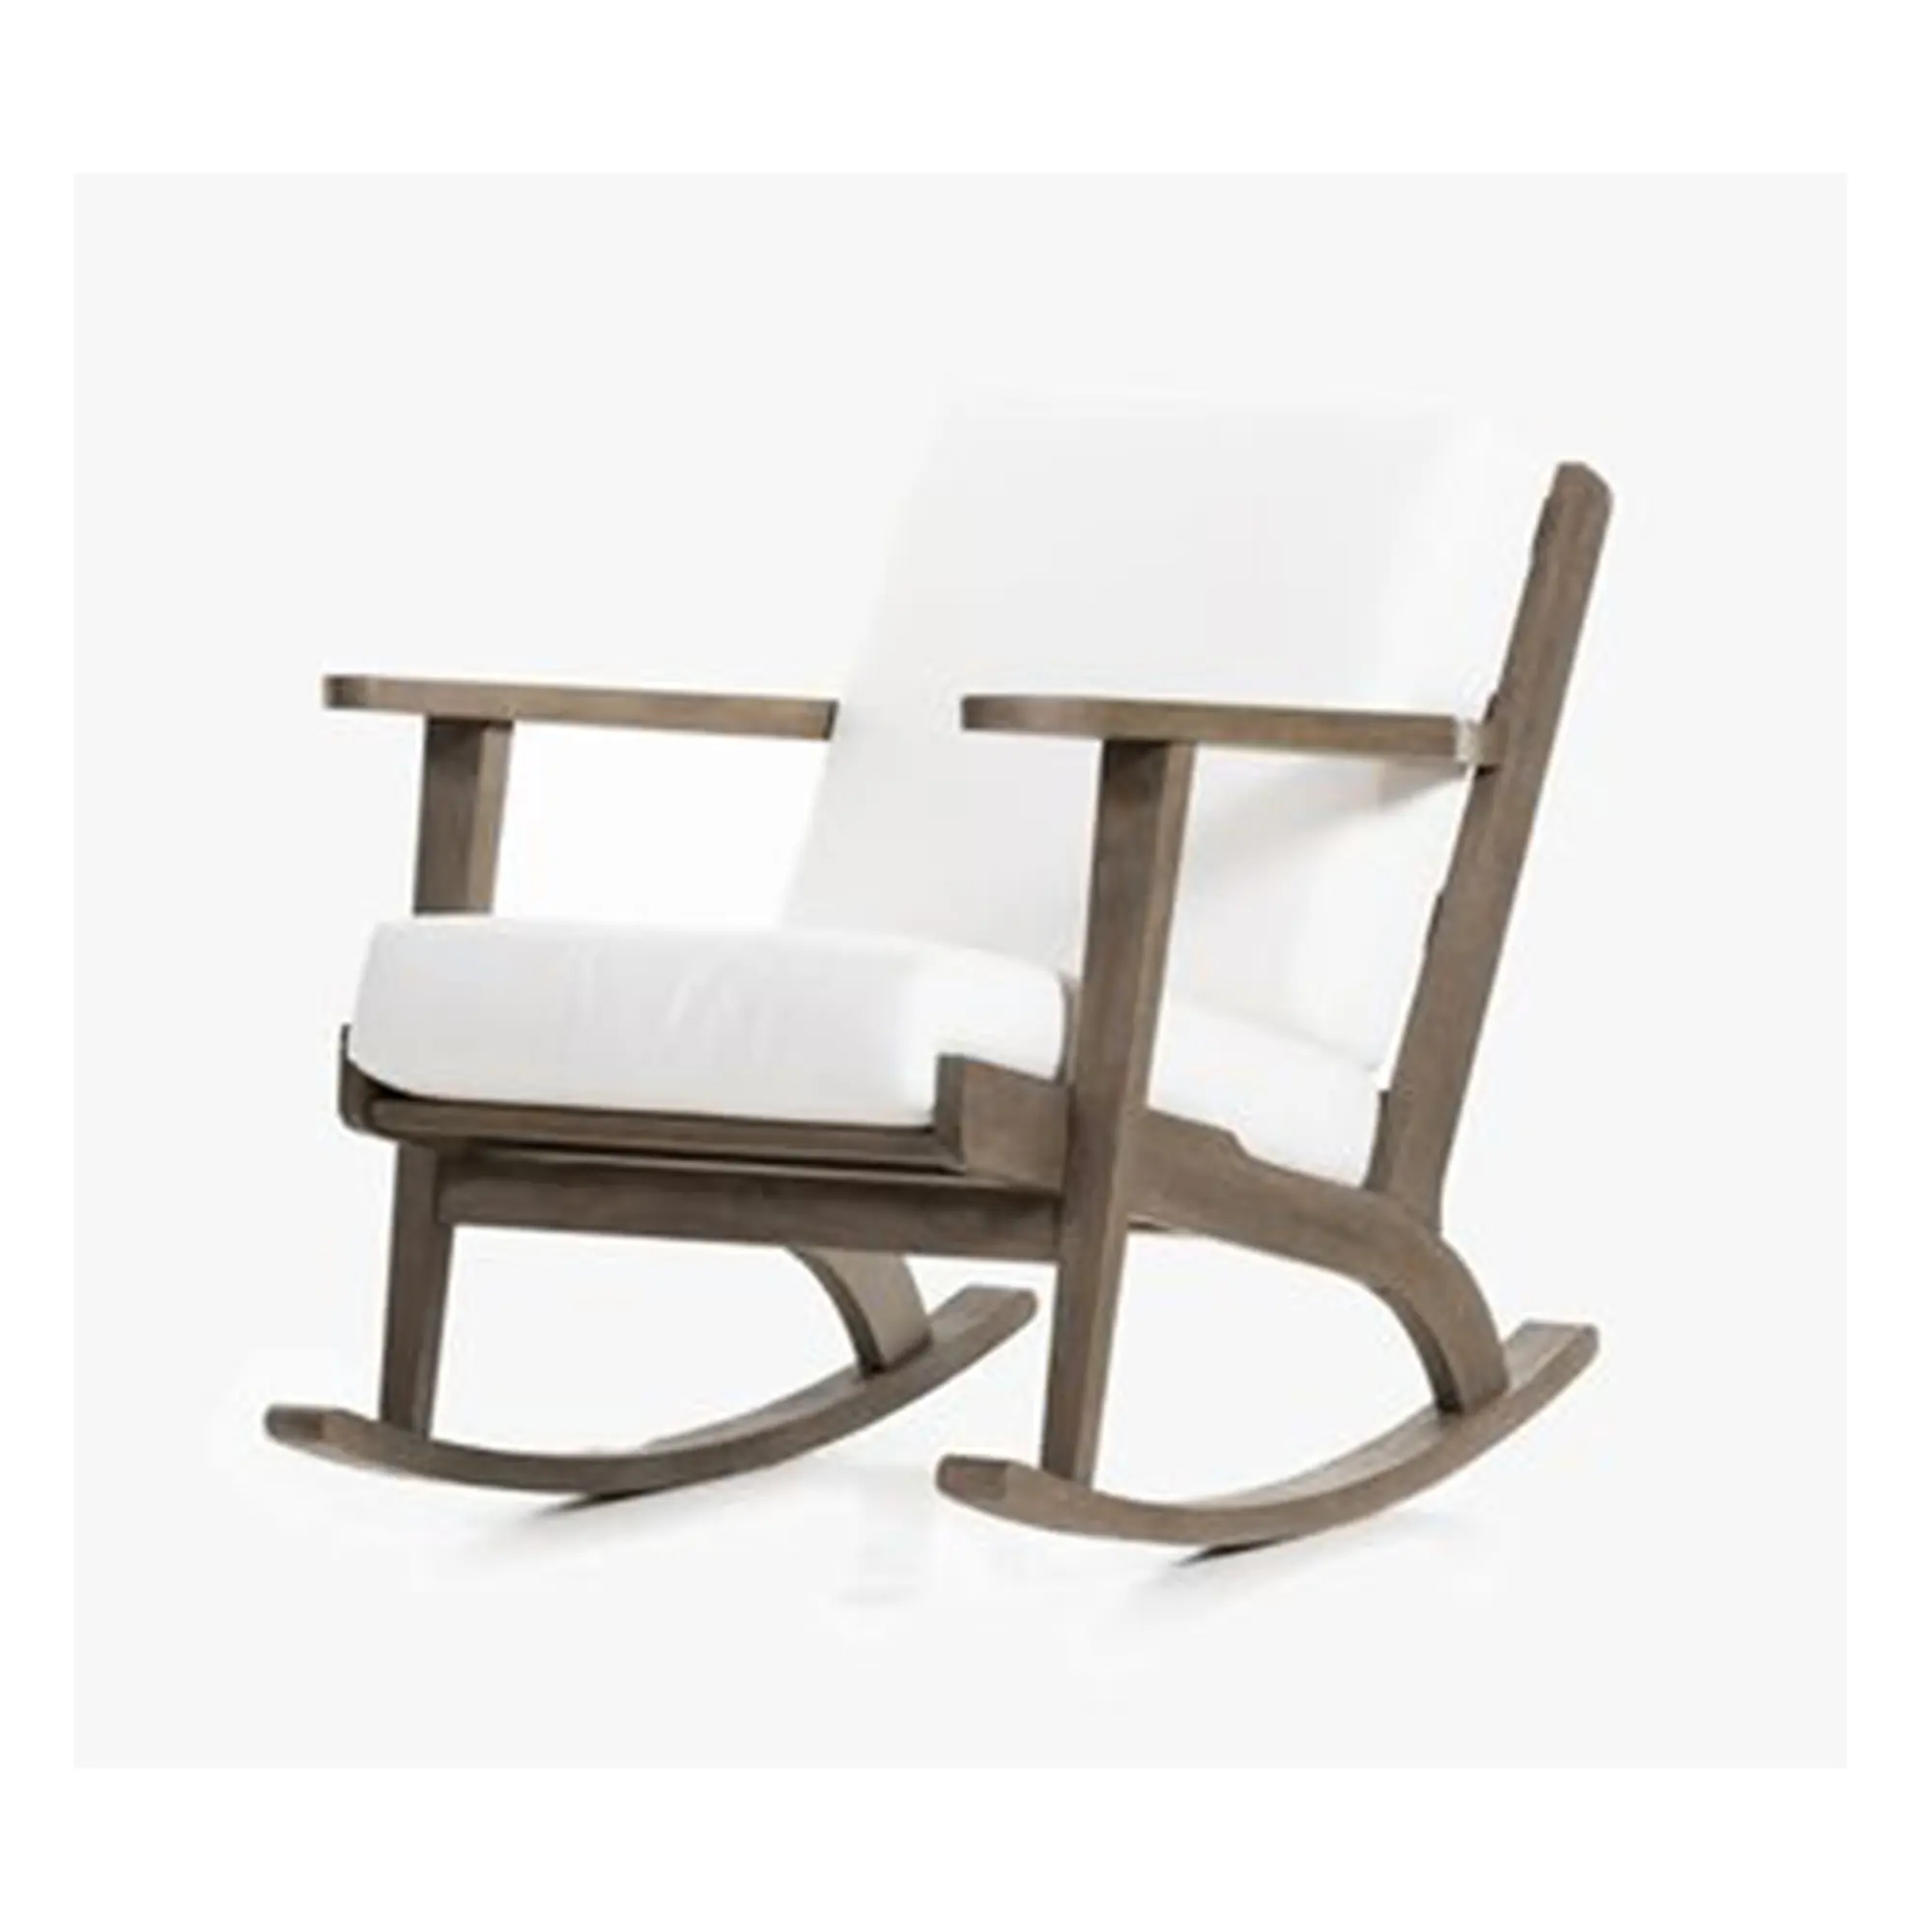 Cadeira de balanço rústica simples Ramlan feita de madeira maciça de teca e almofadas grossas com acabamento cinza.